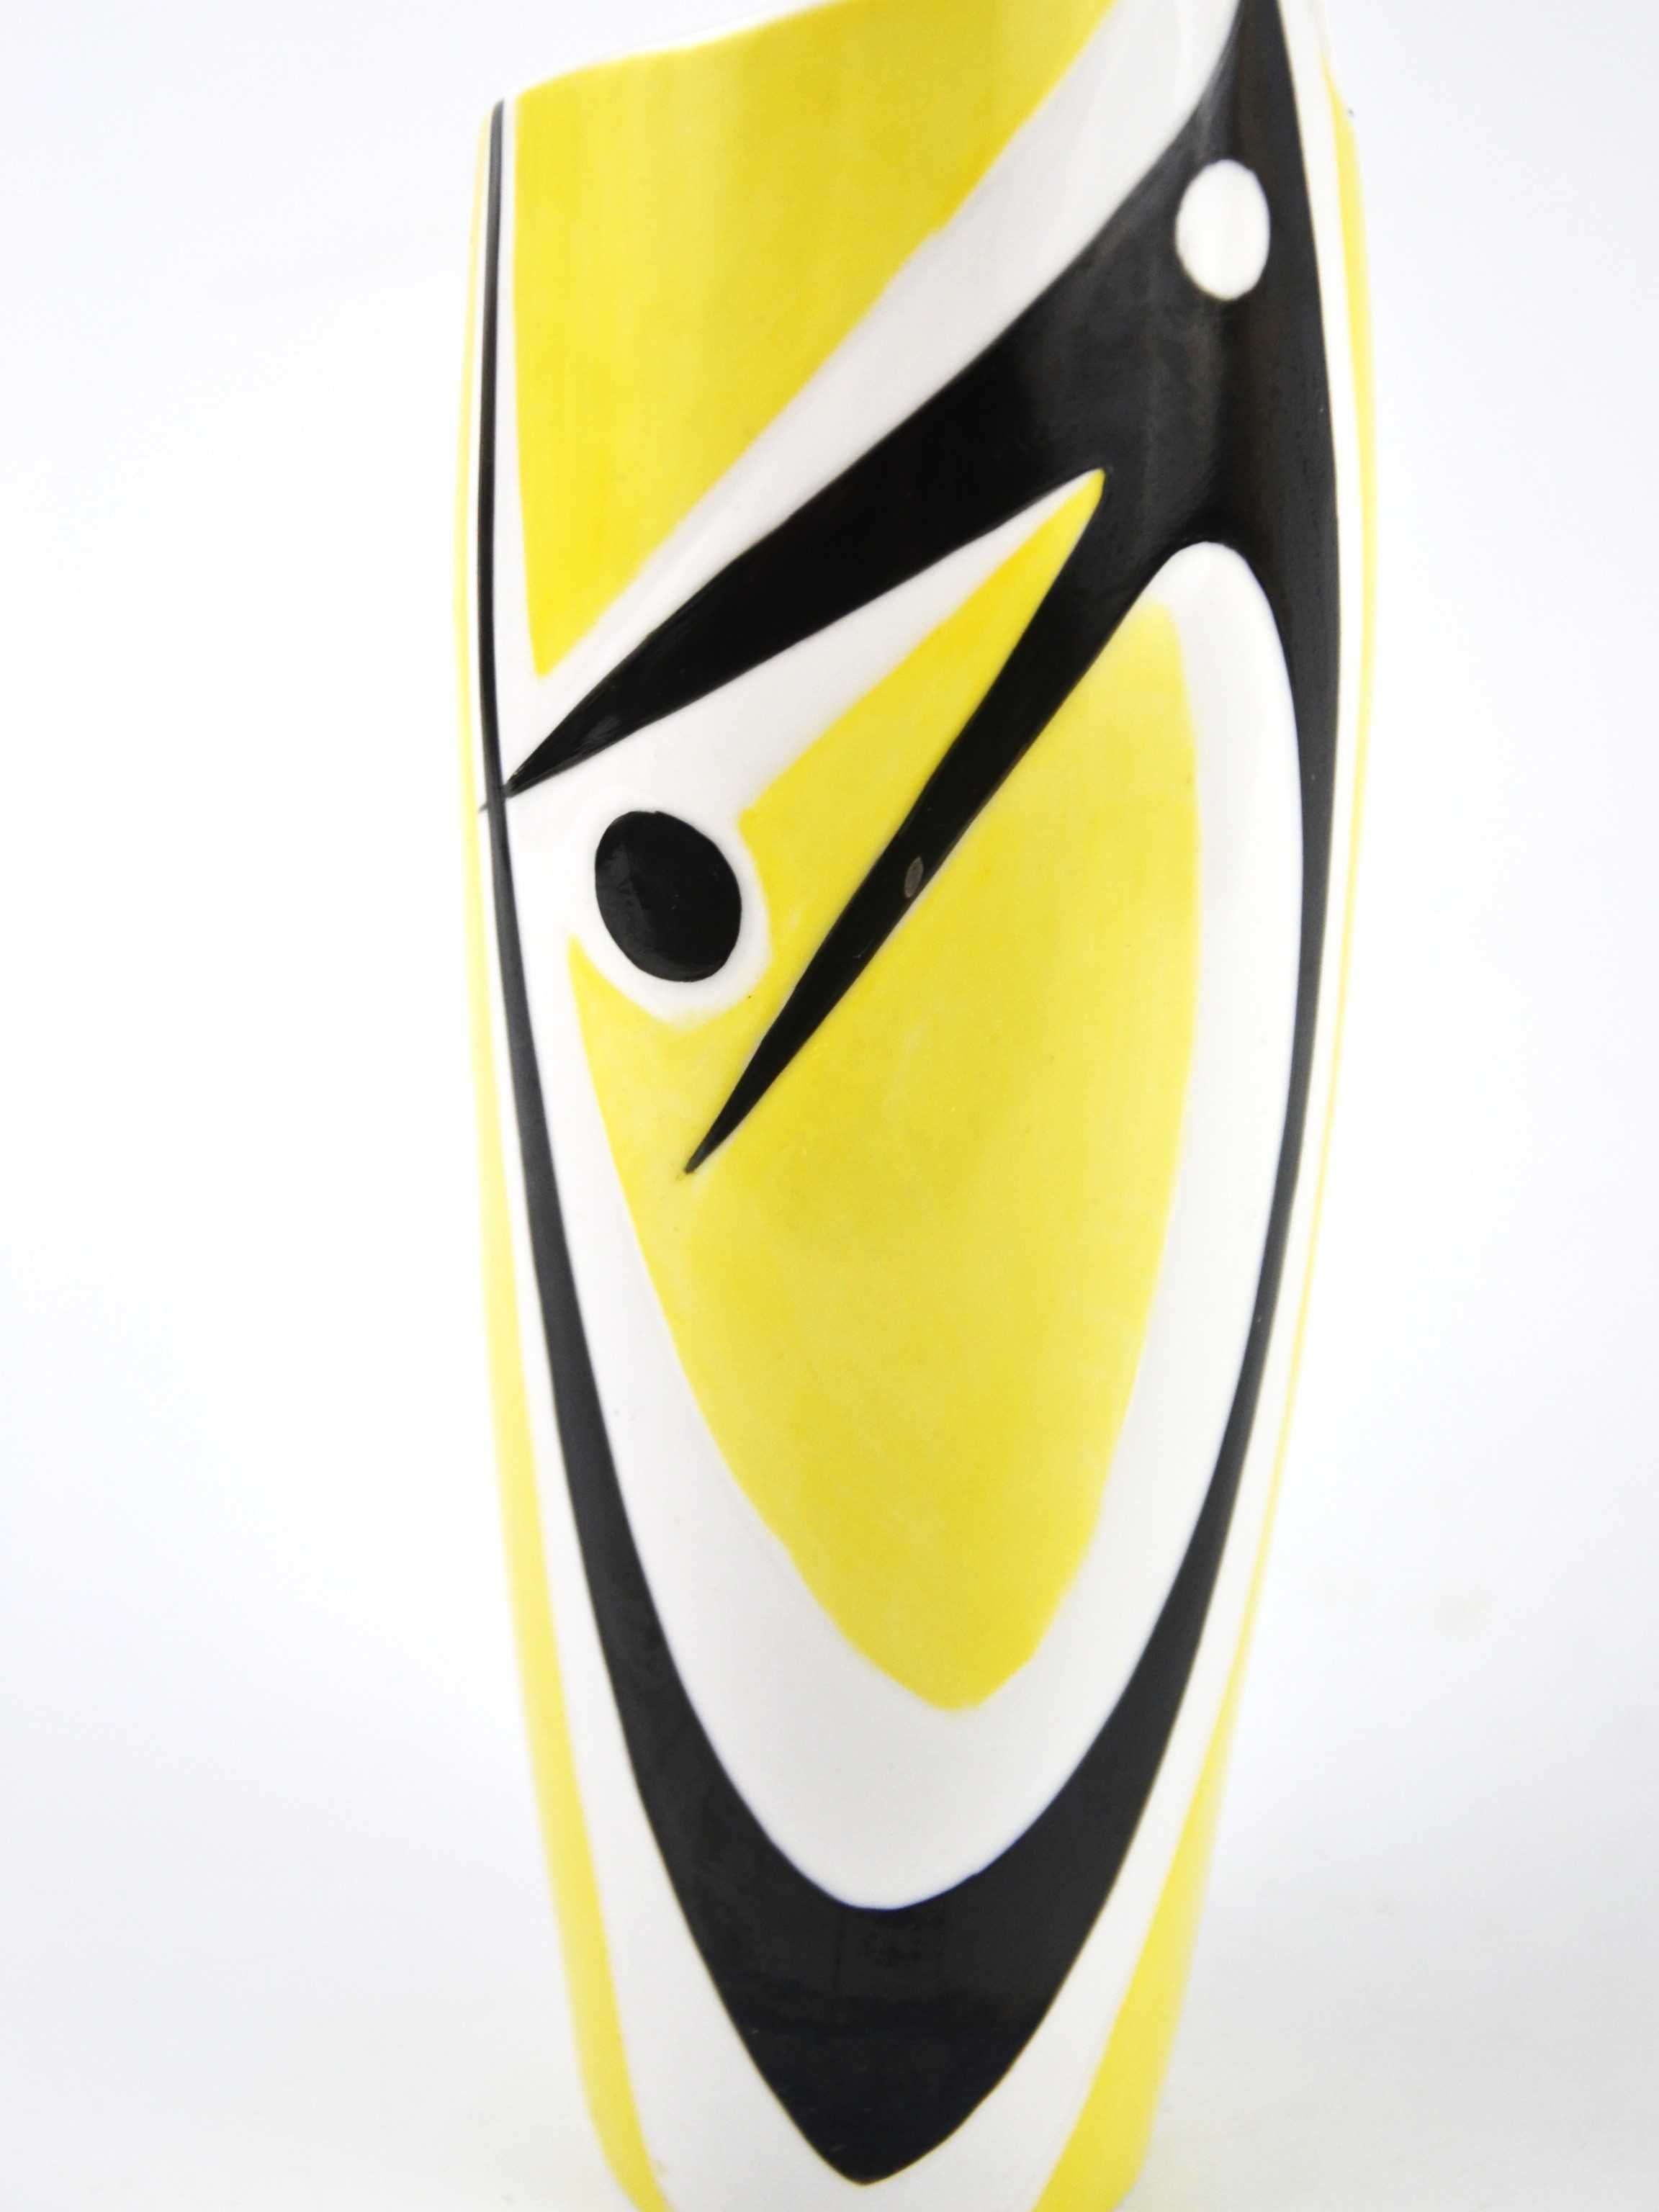 Wazon Zsolnay Török żółto czarny design lata 60te pikasiak 26cm